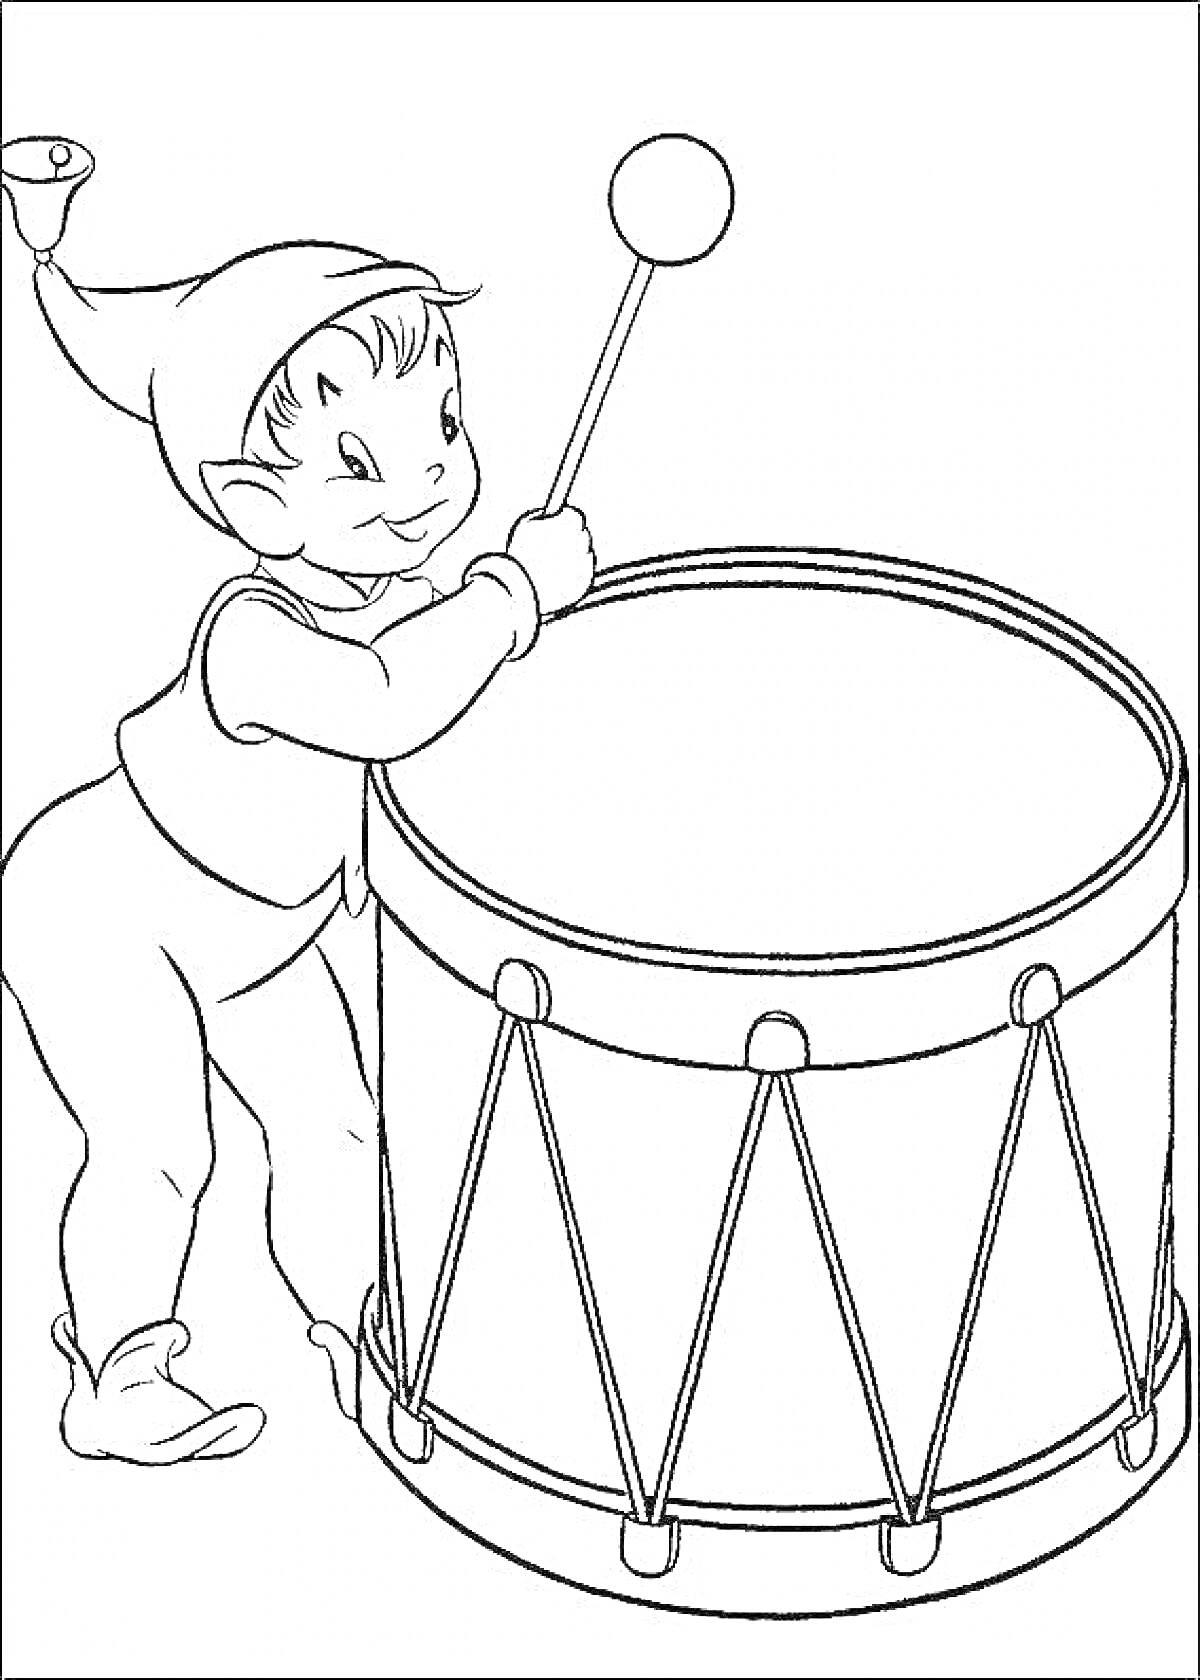 Раскраска Эльф играет на барабане